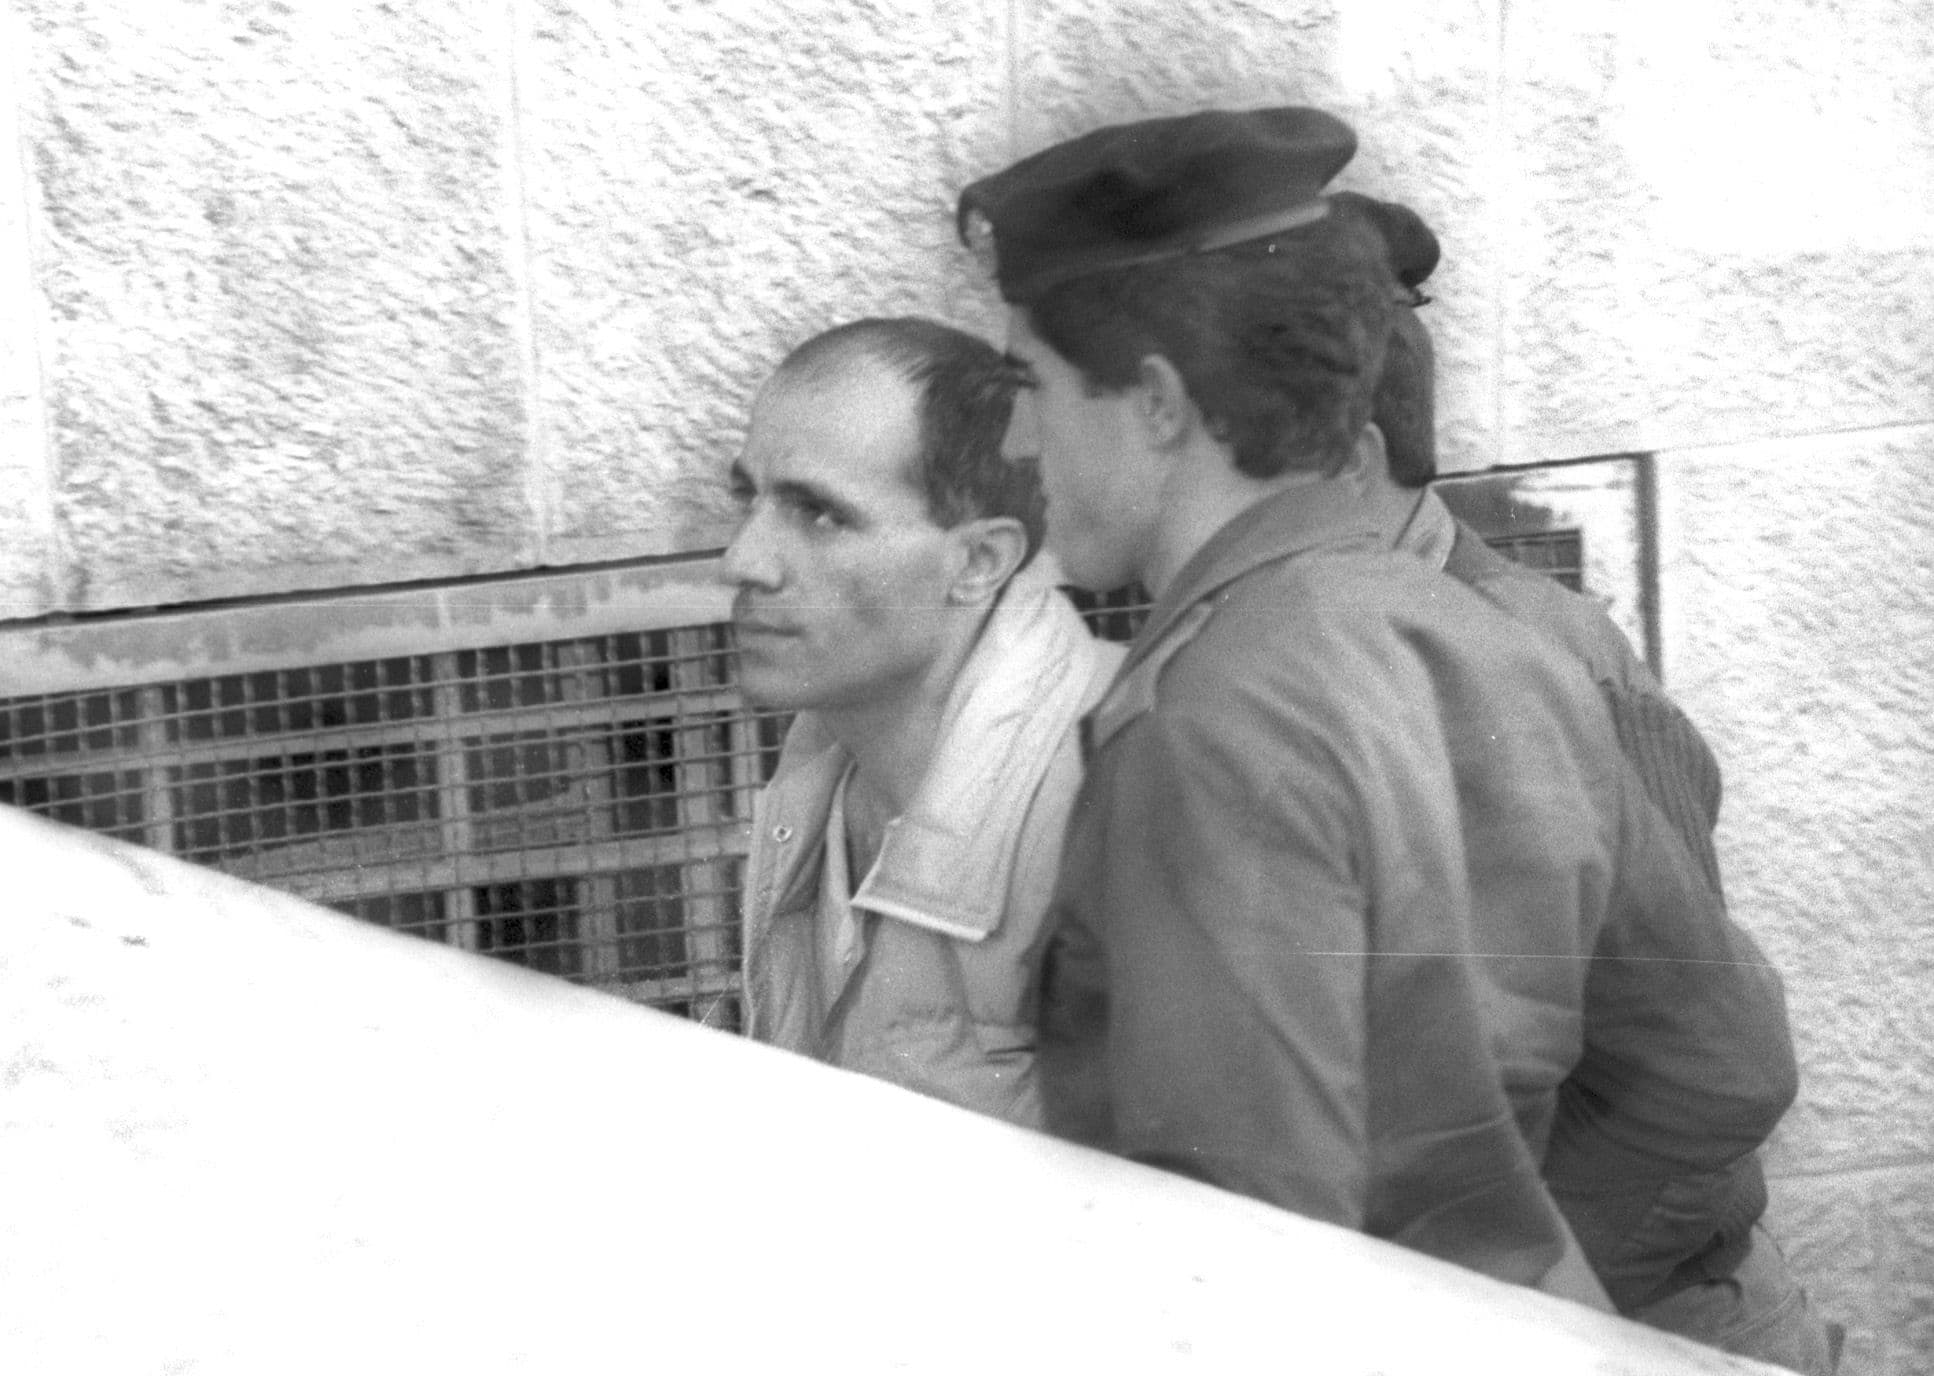 מרדכי ואנונו מובא לבית המשפט המחוזי בירושלים להארכת מעצר, 21 בדצמבר 1987 (צילום: אפי שריר, אוסף דן הדני, הספרייה הלאומית)